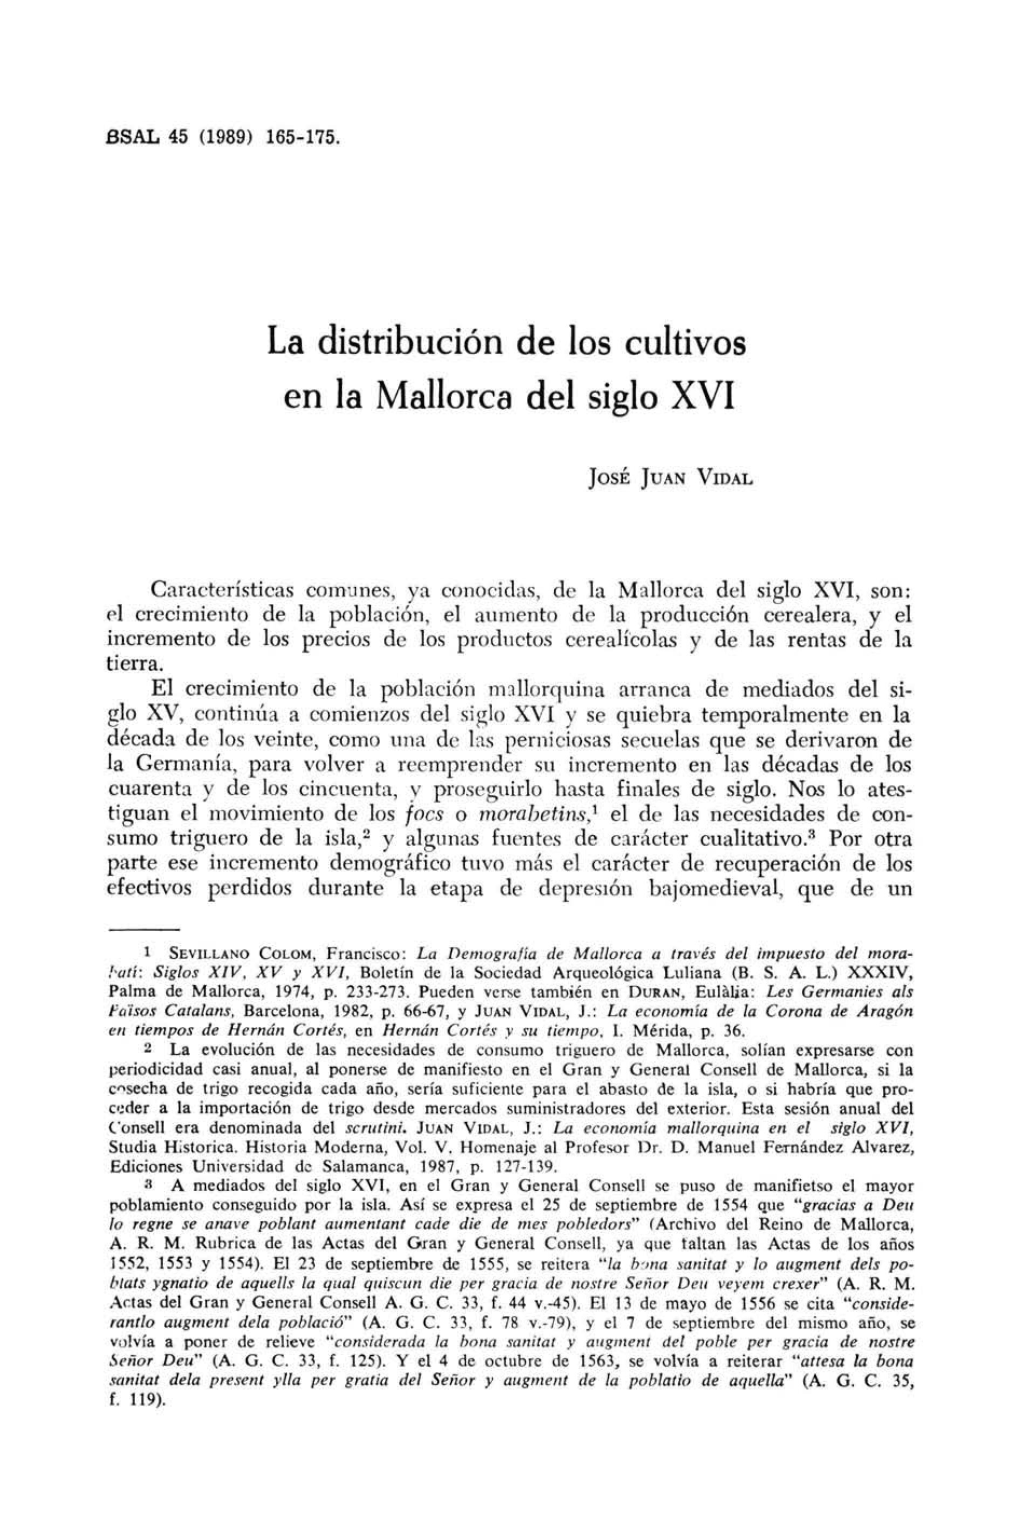 La Distribución De Los Cultivos En La Mallorca Del Siglo XVI